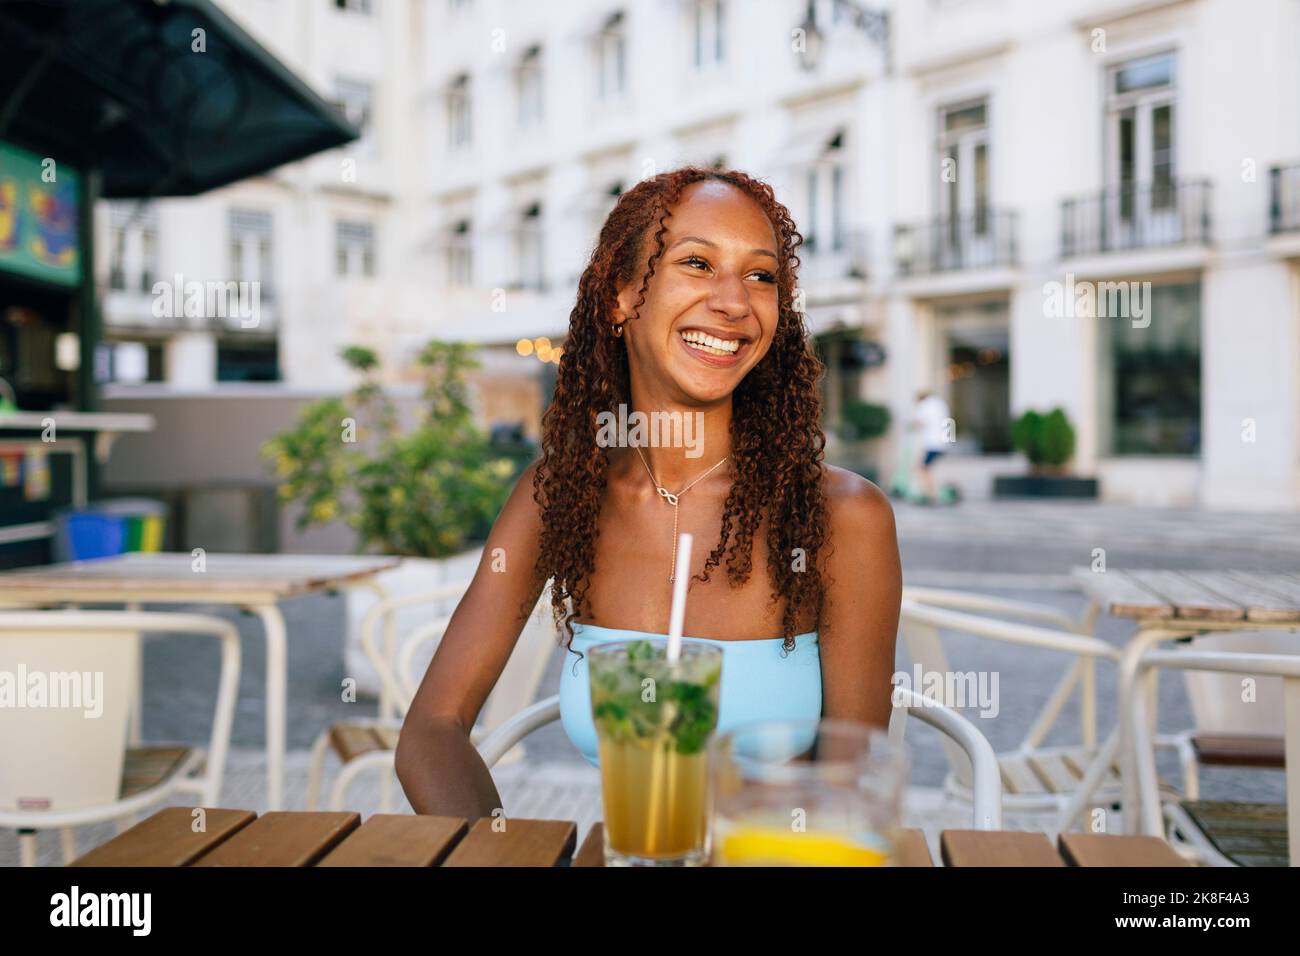 Glückliche junge Frau mit lockigen Haaren sitzt im Straßencafé Stockfoto